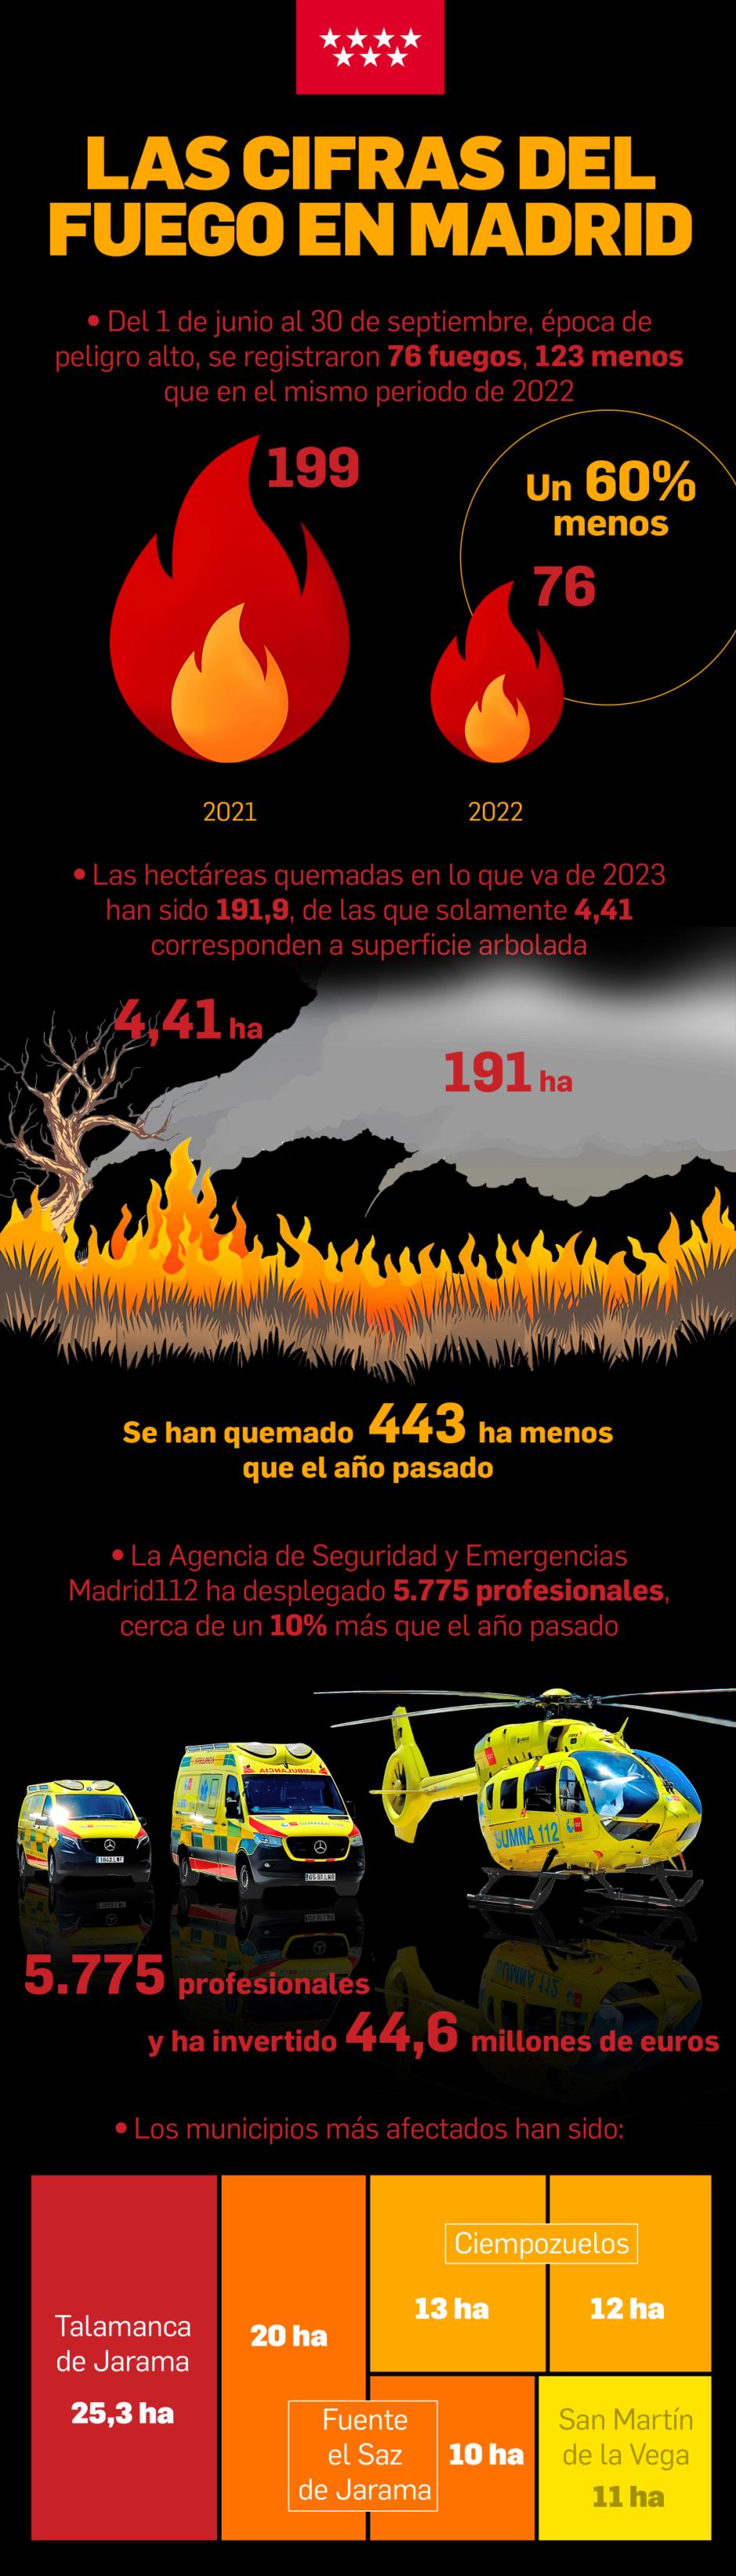 Las cifras del fuego en Madrid